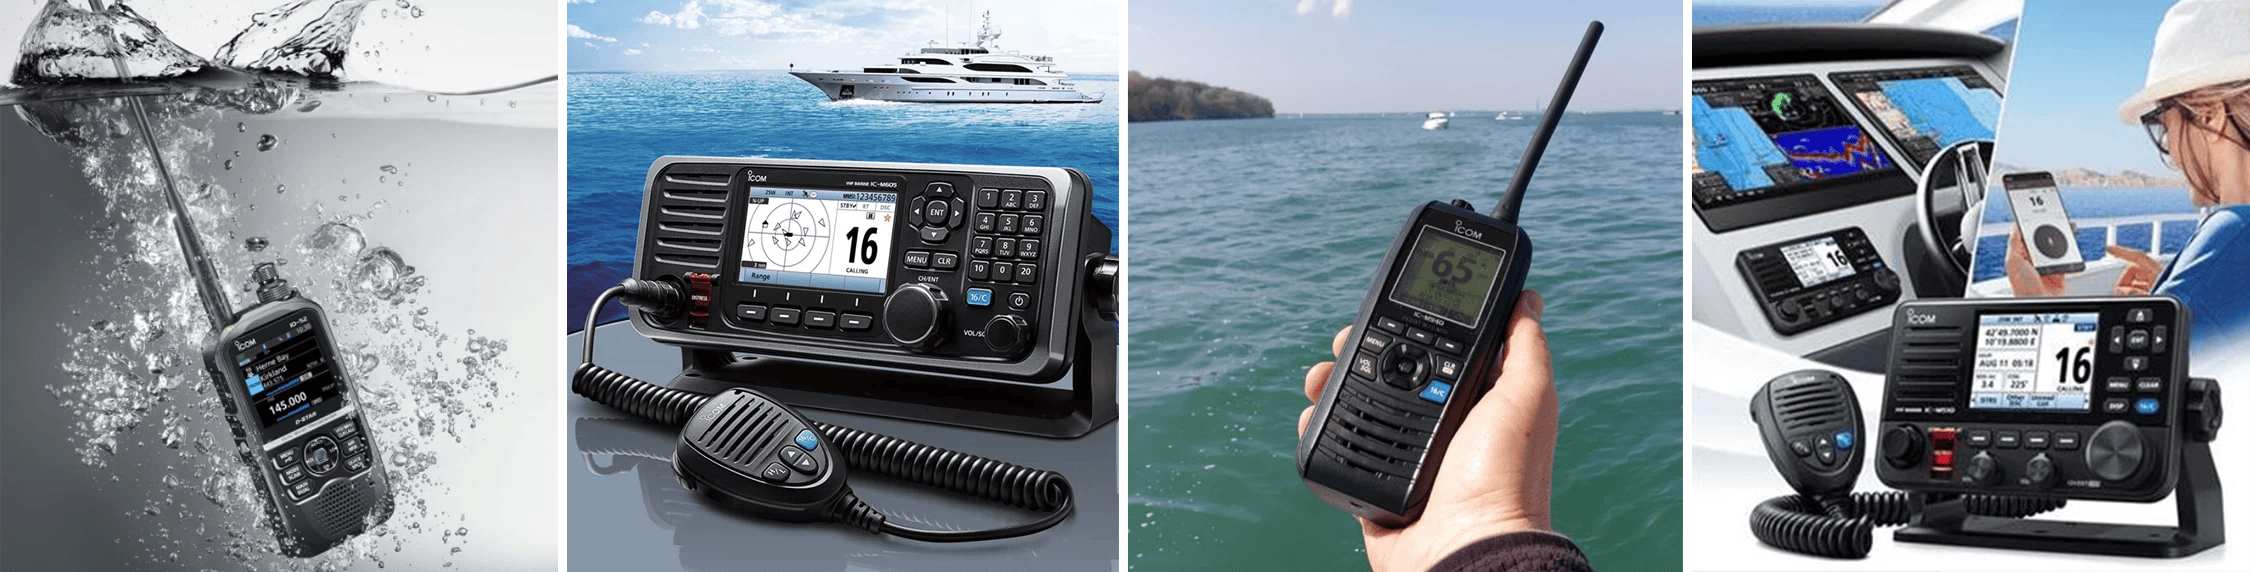 Marine VHF Radios | Citimarine Store